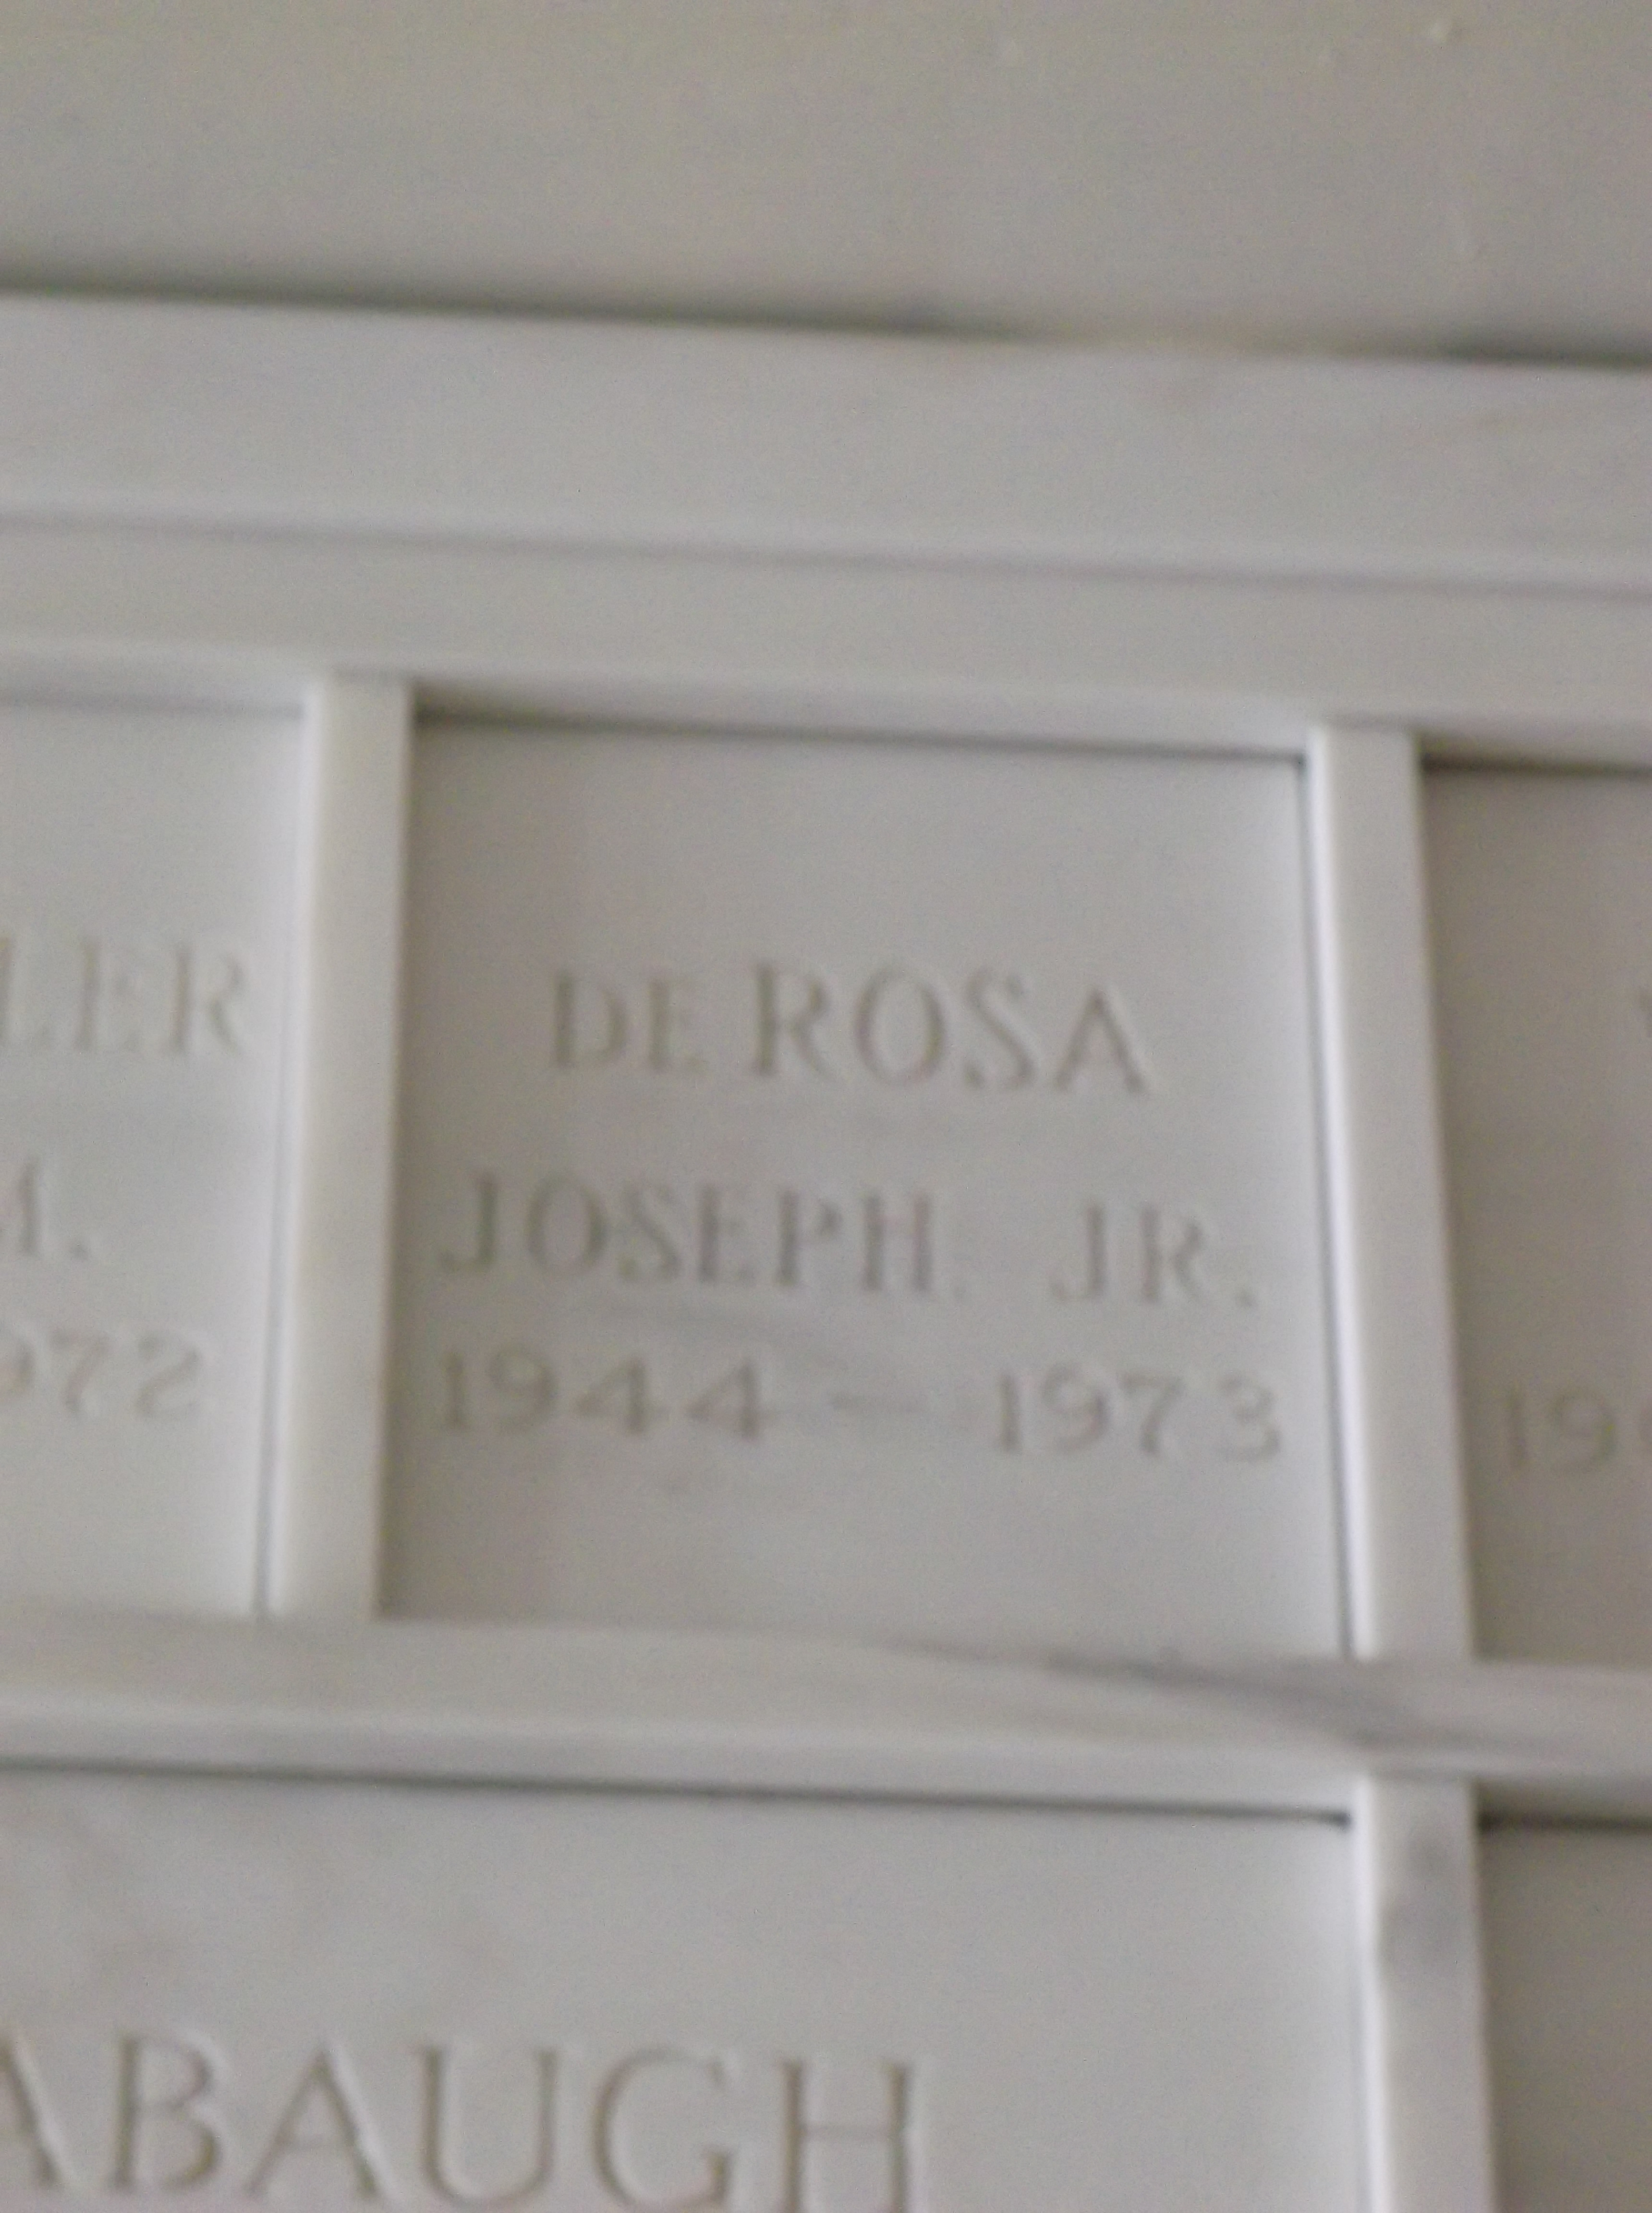 Joseph De Rosa, Jr